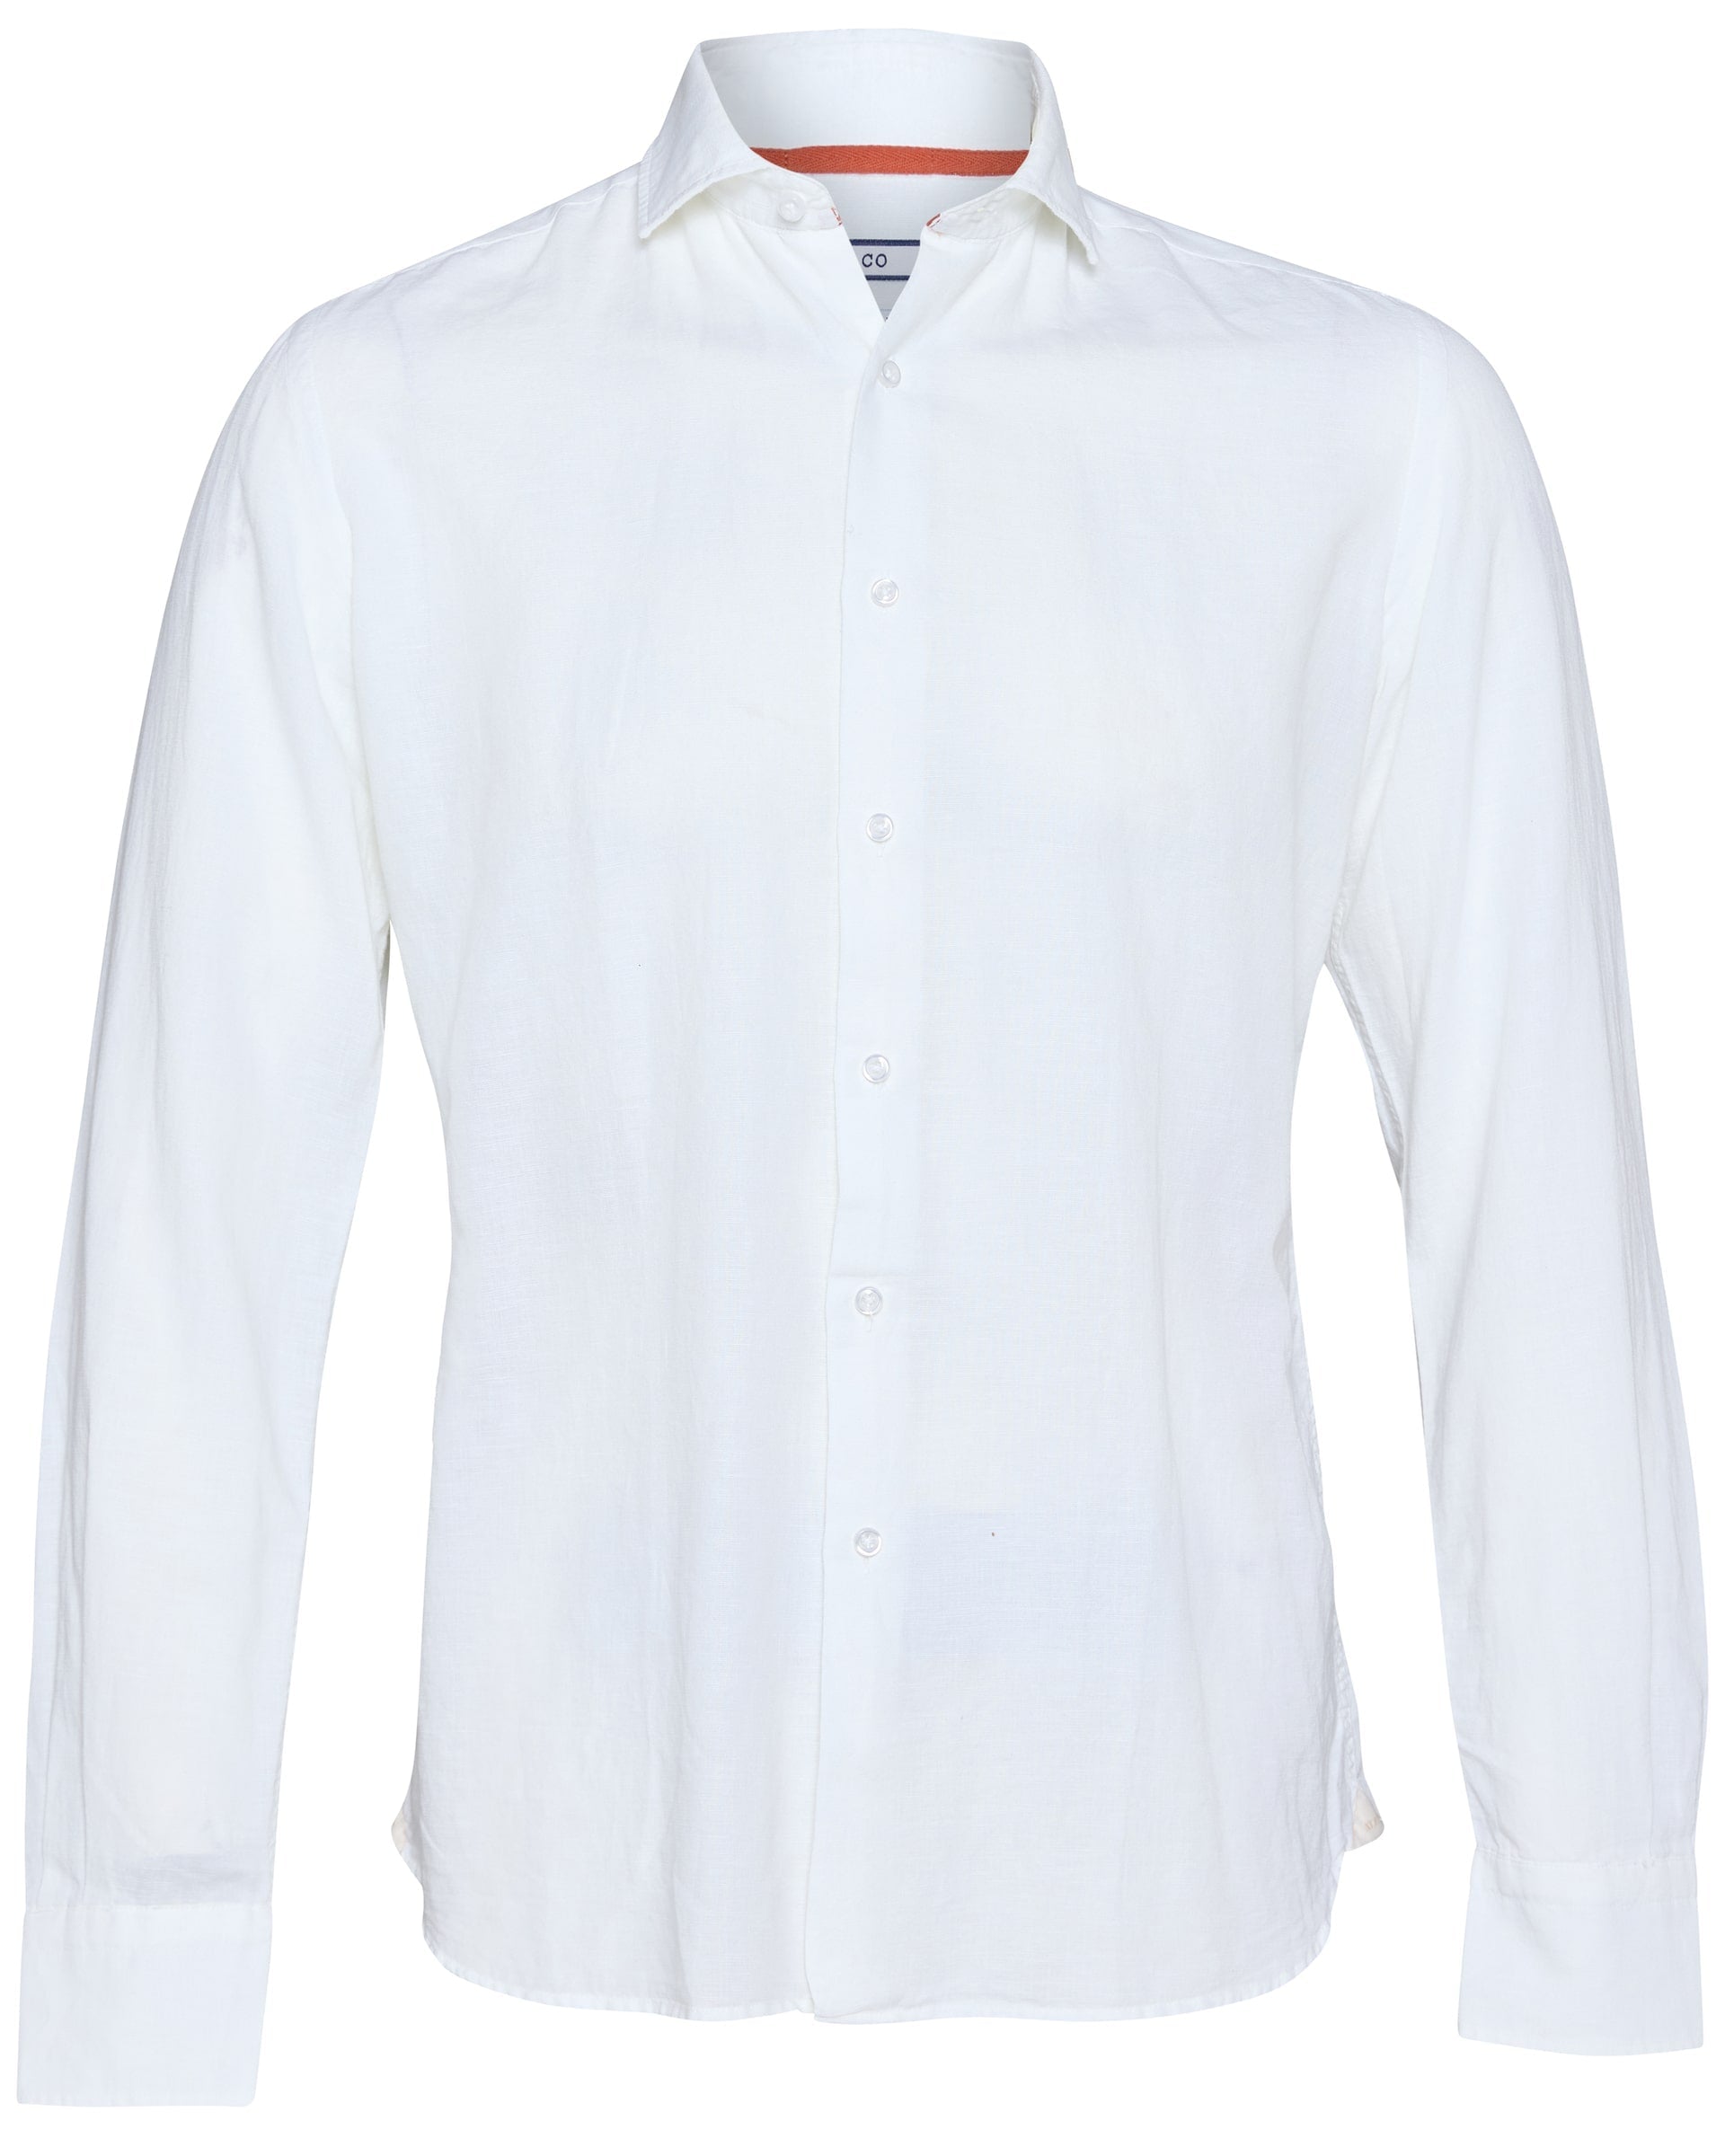 Francia Linen Shirt - Men's Casual Shirts at Menzclub